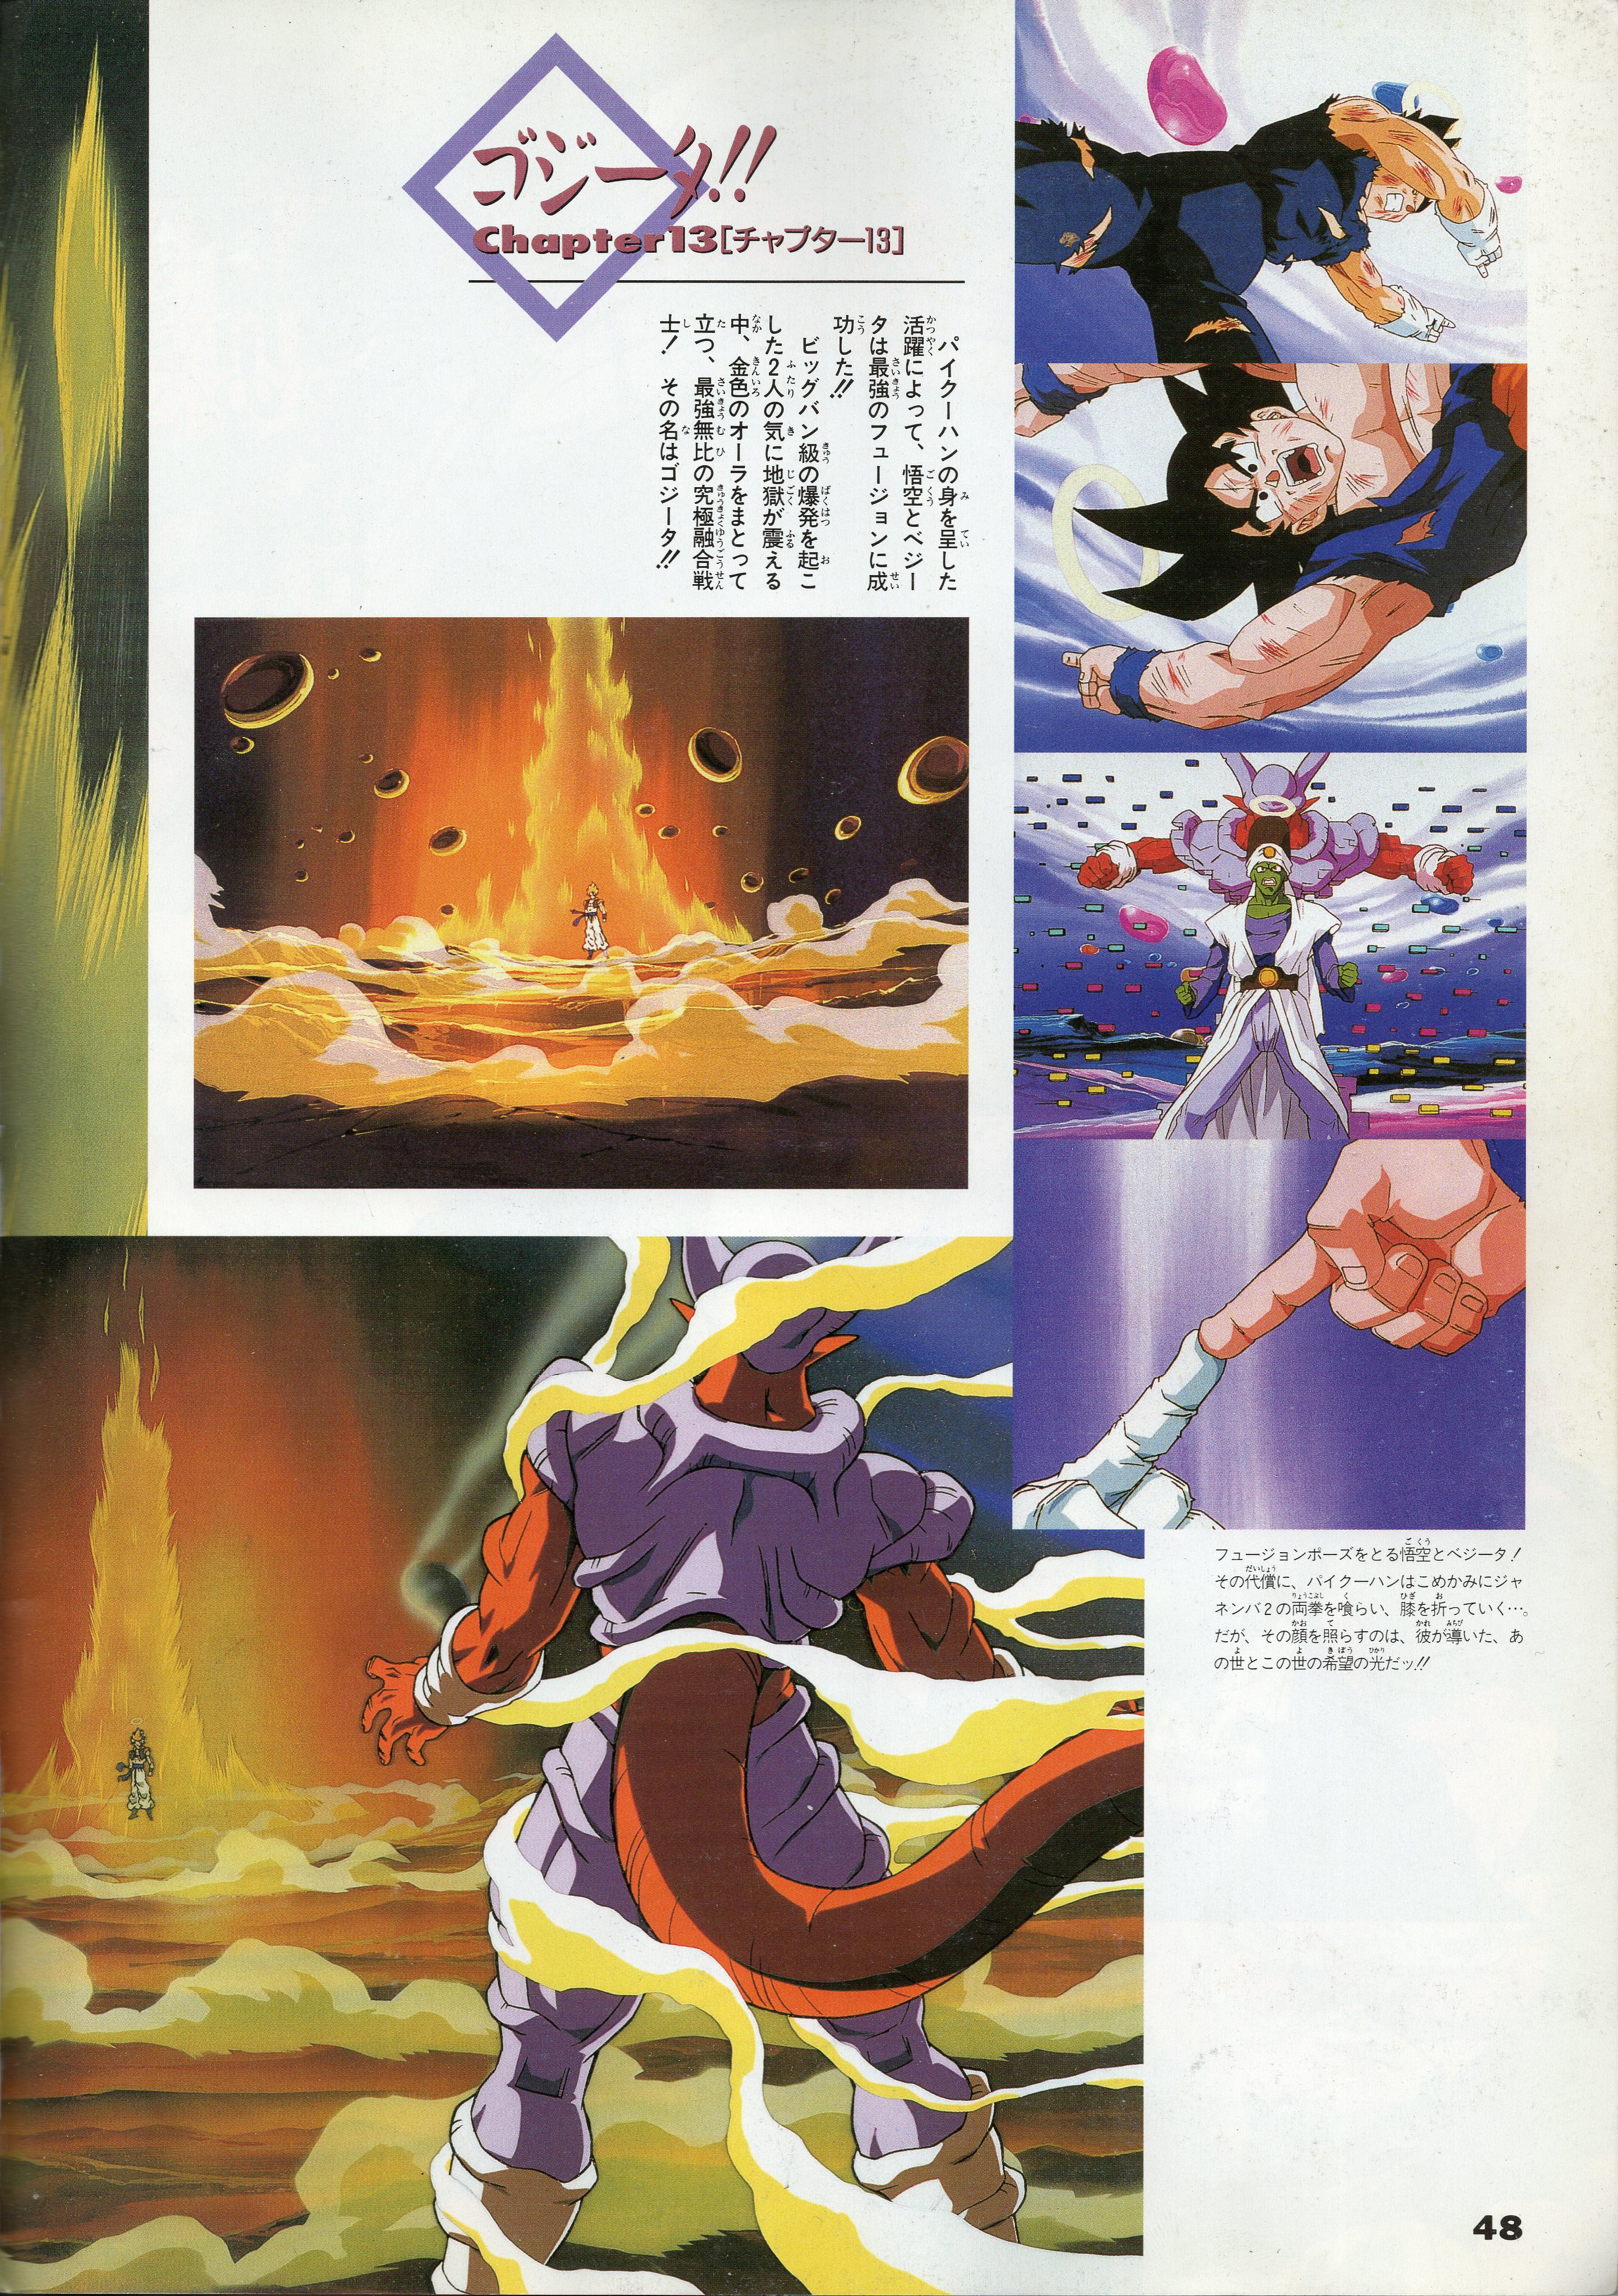 Piccolo Damayonnaiz on X: Anime/Manga Dragon Ball Z EP 188 Dragon Ball  chapter 413  / X